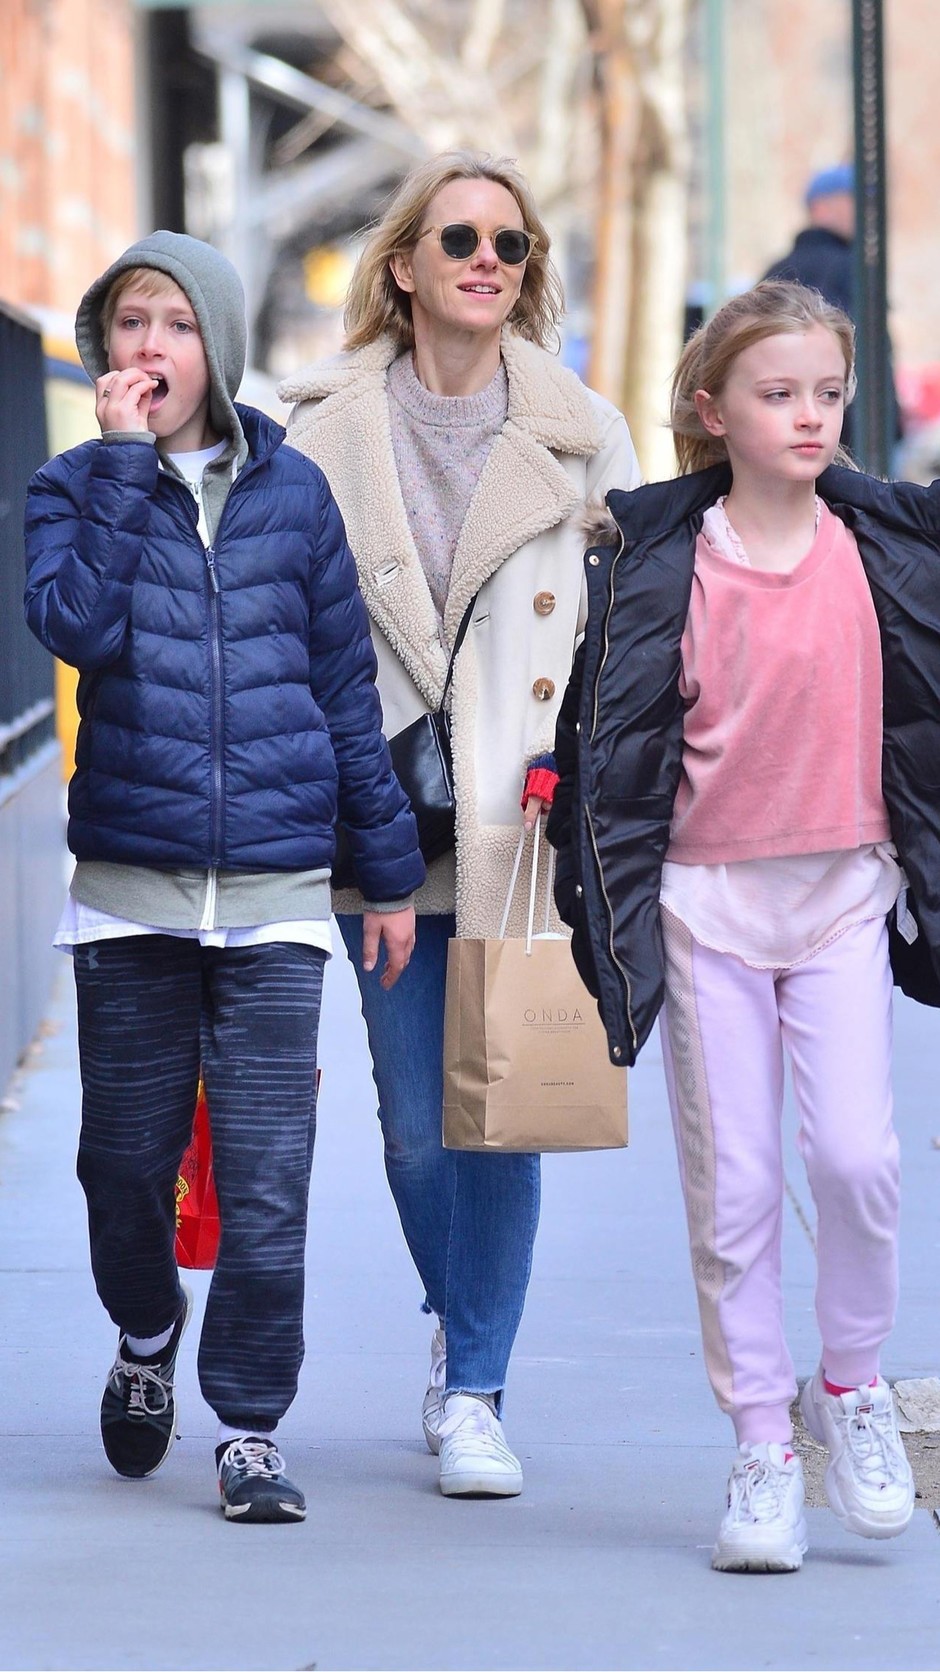 Наоми Уоттс на прогулке с детьми в Нью-Йорке